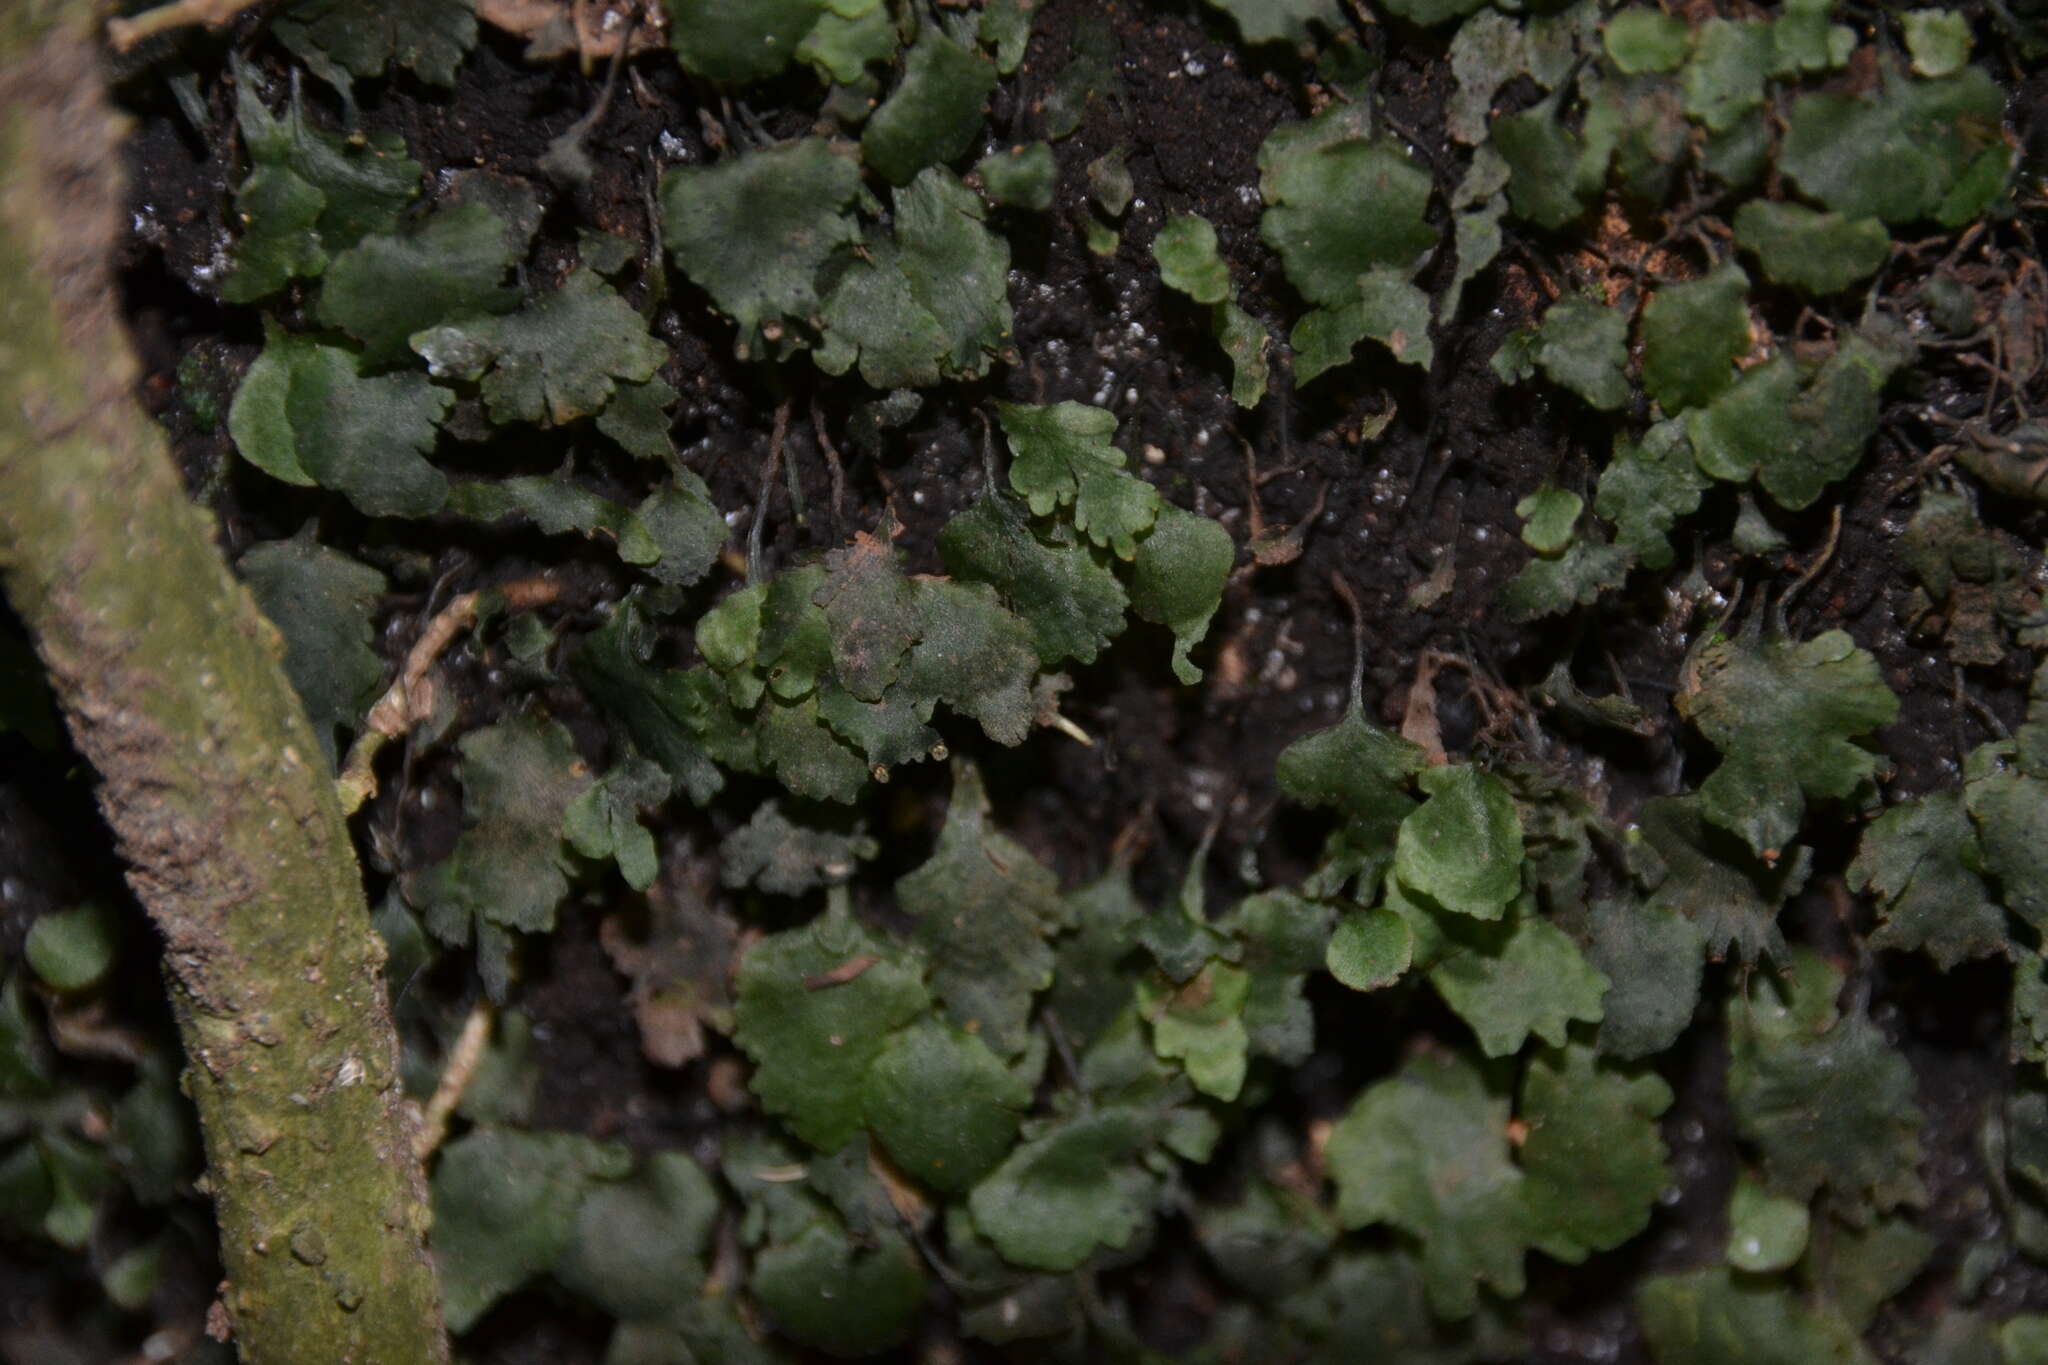 Sivun Didymoglossum ekmanii (Wess. Boer) Ebihara & Dubuisson kuva